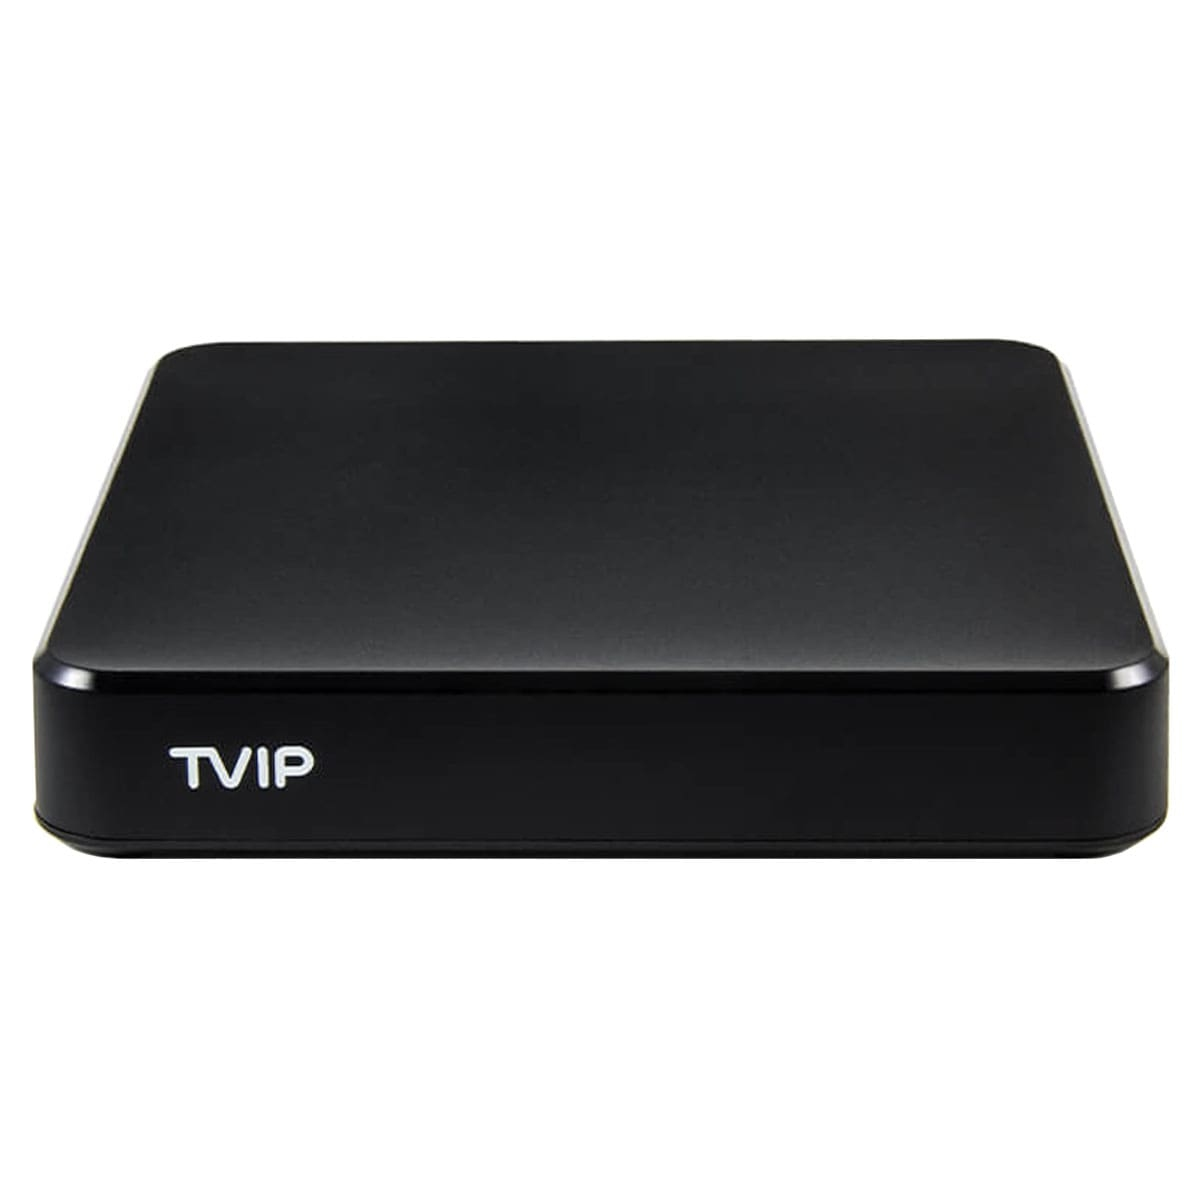 TVIP S-Box v.706 8 GB